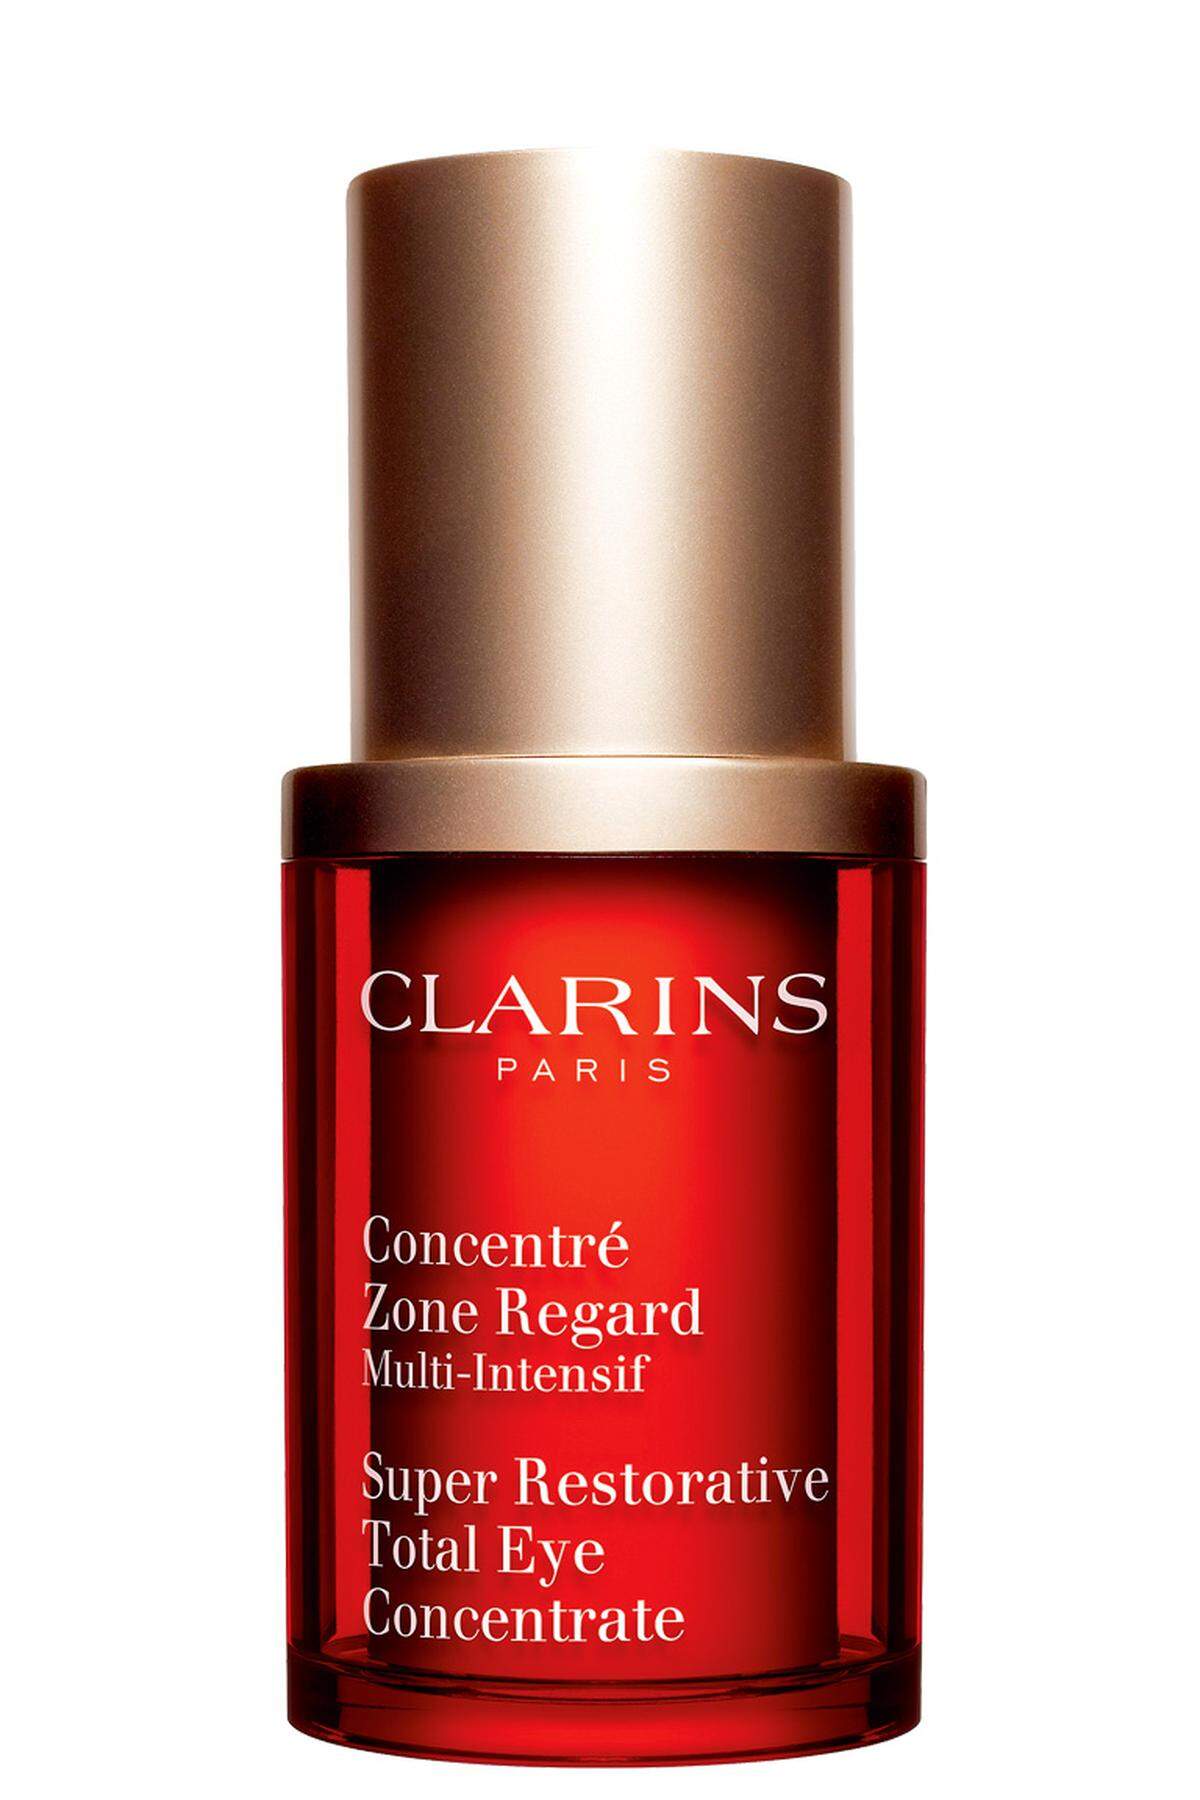 „Concentré Zone Regard Multi-Intensif“ von Clarins mit Seidenakazienextrakt gegen Augenschatten, 68 €.